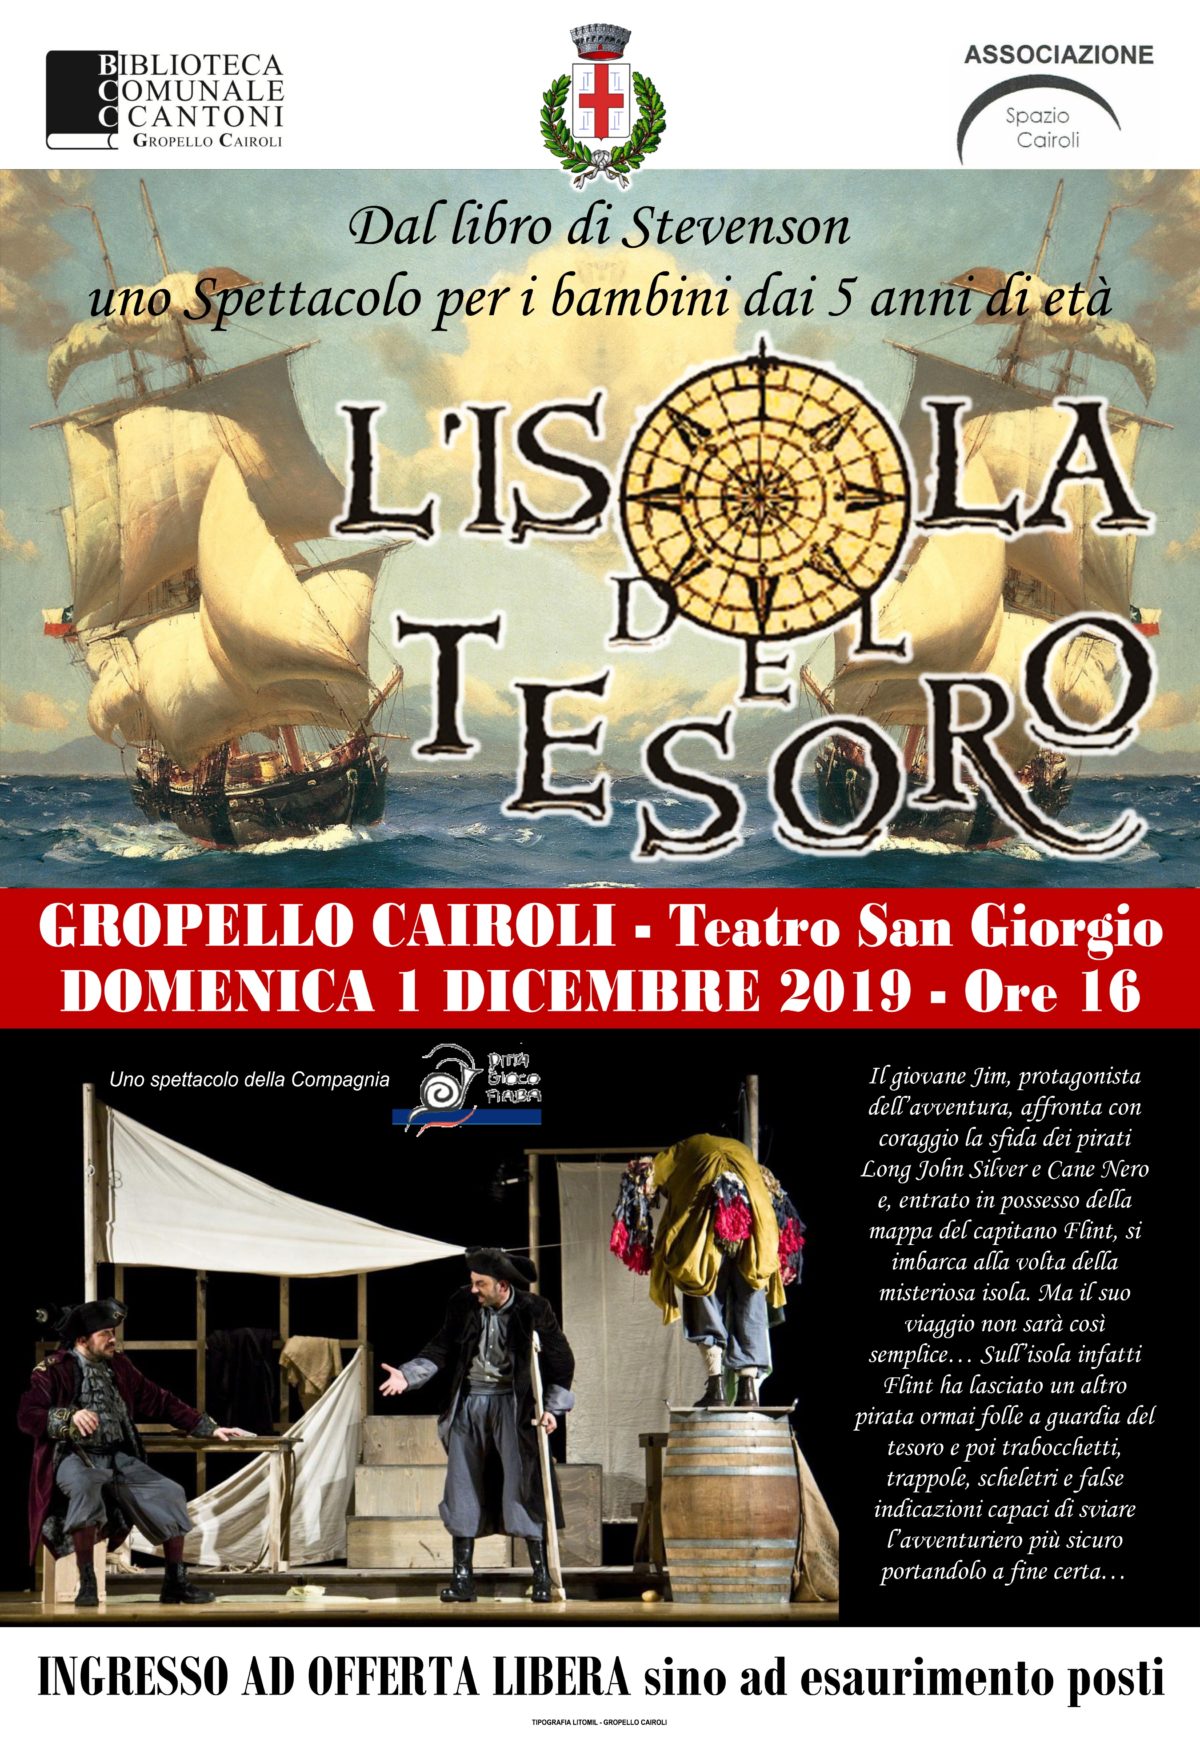 Biblioteca di Gropello C.: domenica 1 dicembre spettacolo teatrale per bambini “L’isola del tesoro” al teatro San Giorgio ore 16,00